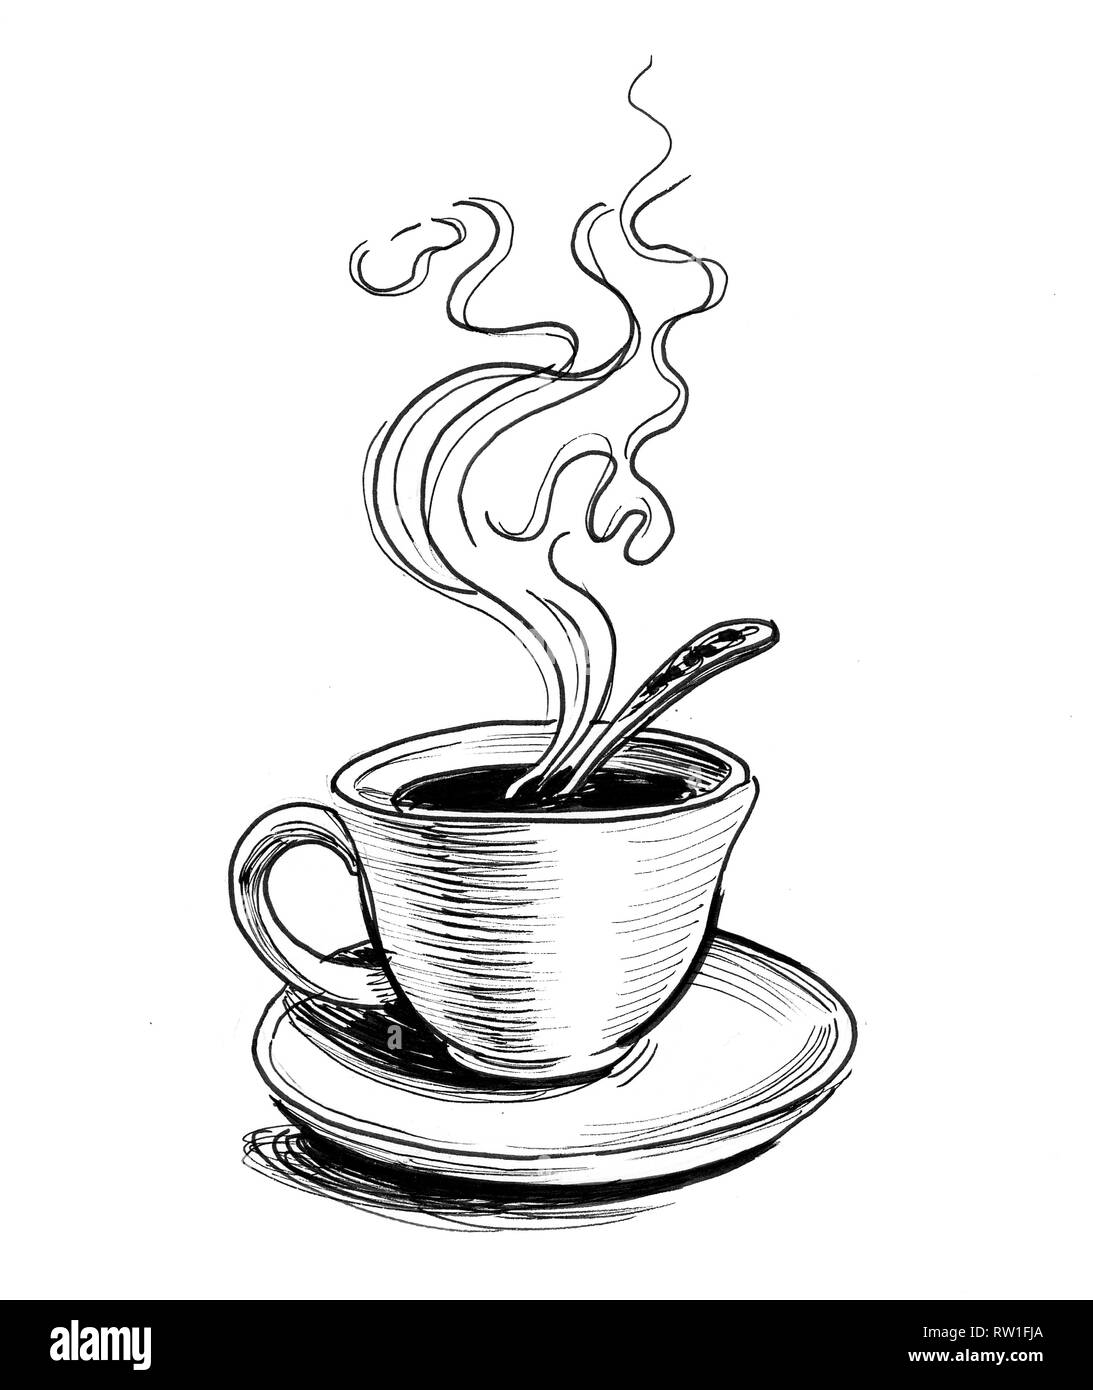 Tasse de thé chaud sur une soucoupe. Dessin noir et blanc Encre Photo Stock  - Alamy